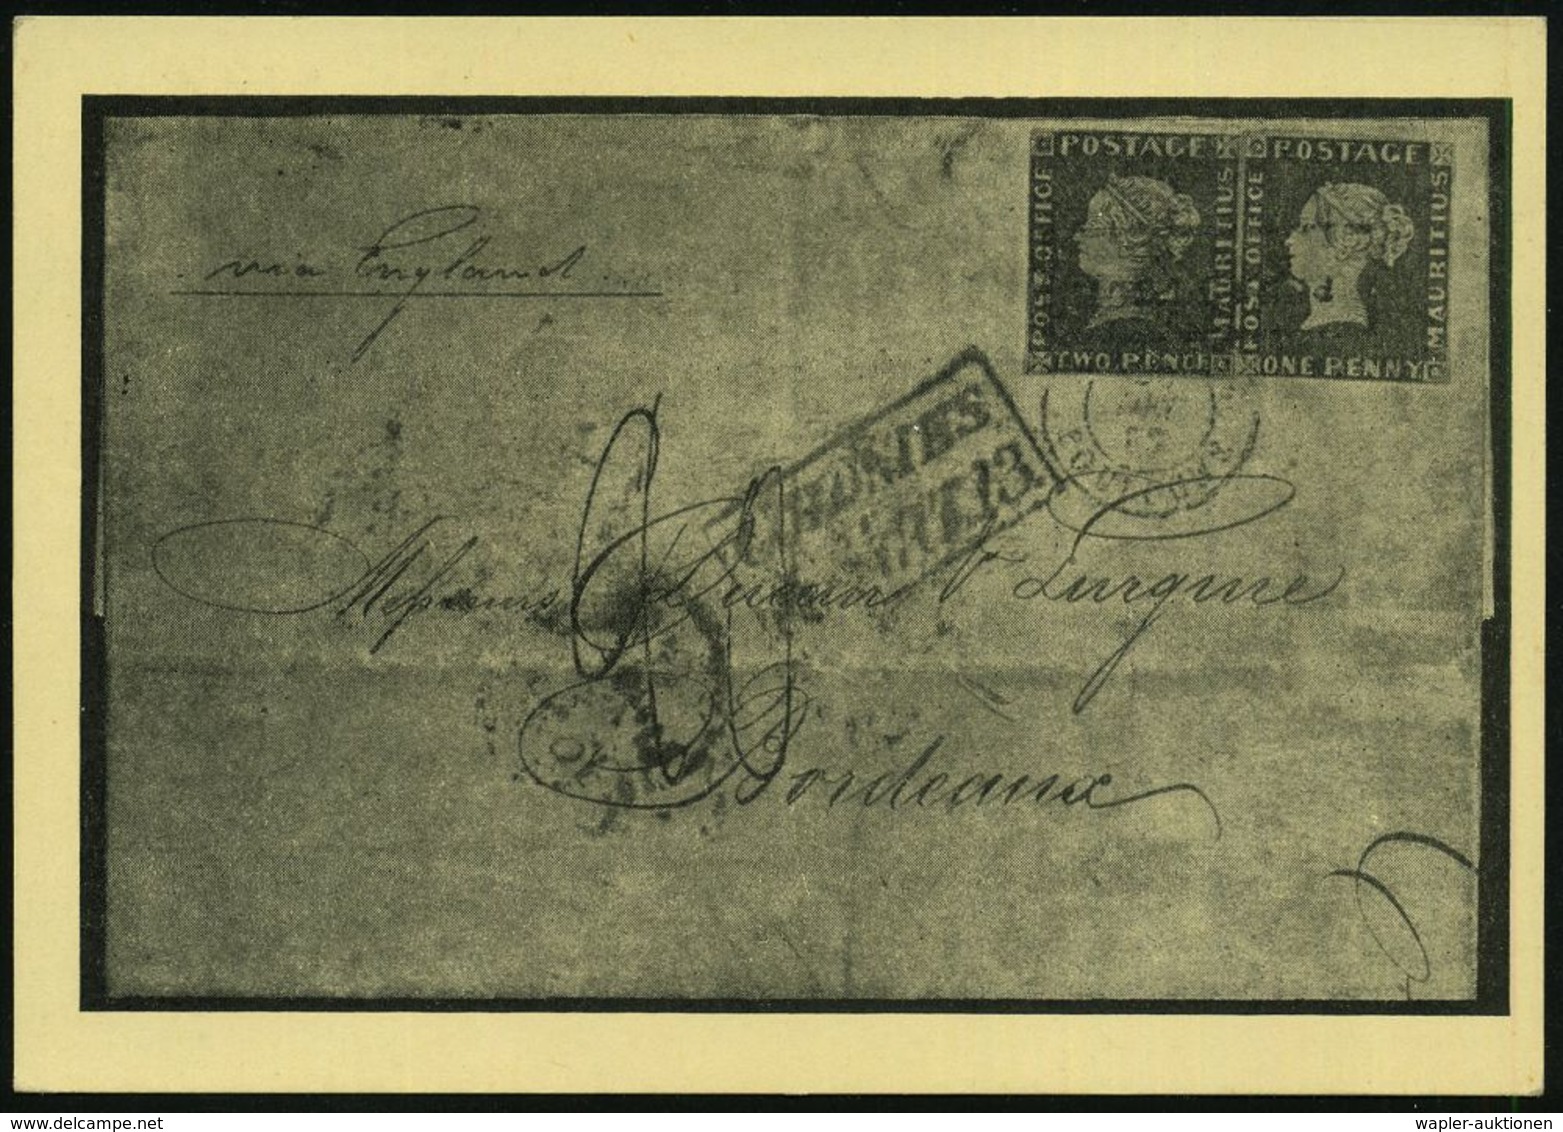 HAMBURG 1/ Tag Der Briefmarke 1937 (9.1.) SSt +  V I O L E T T E R   HdN: DSG/MAURITIUS/POST OFFICE/Tag D.Briefmarke ("B - Journée Du Timbre